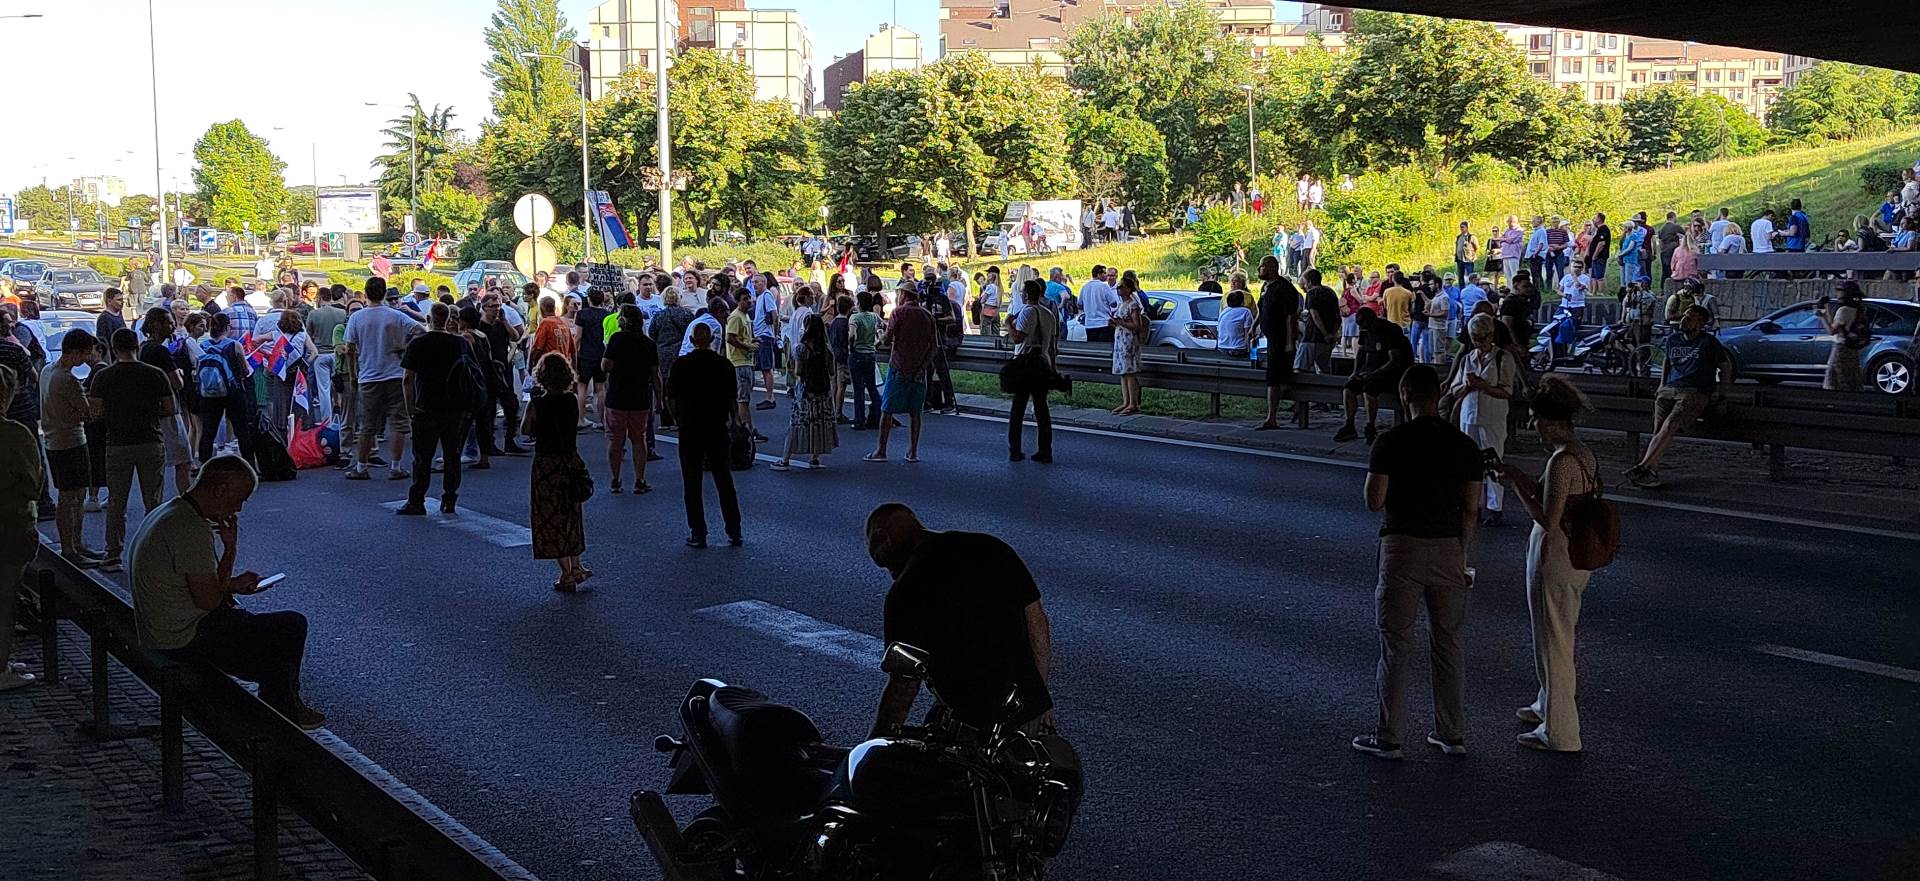  "Srbija protiv nasilja": Završena blokada auto-puteva u Beogradu i Novom Sadu, sutra protestna šetnja (FOTO/VIDEO) 